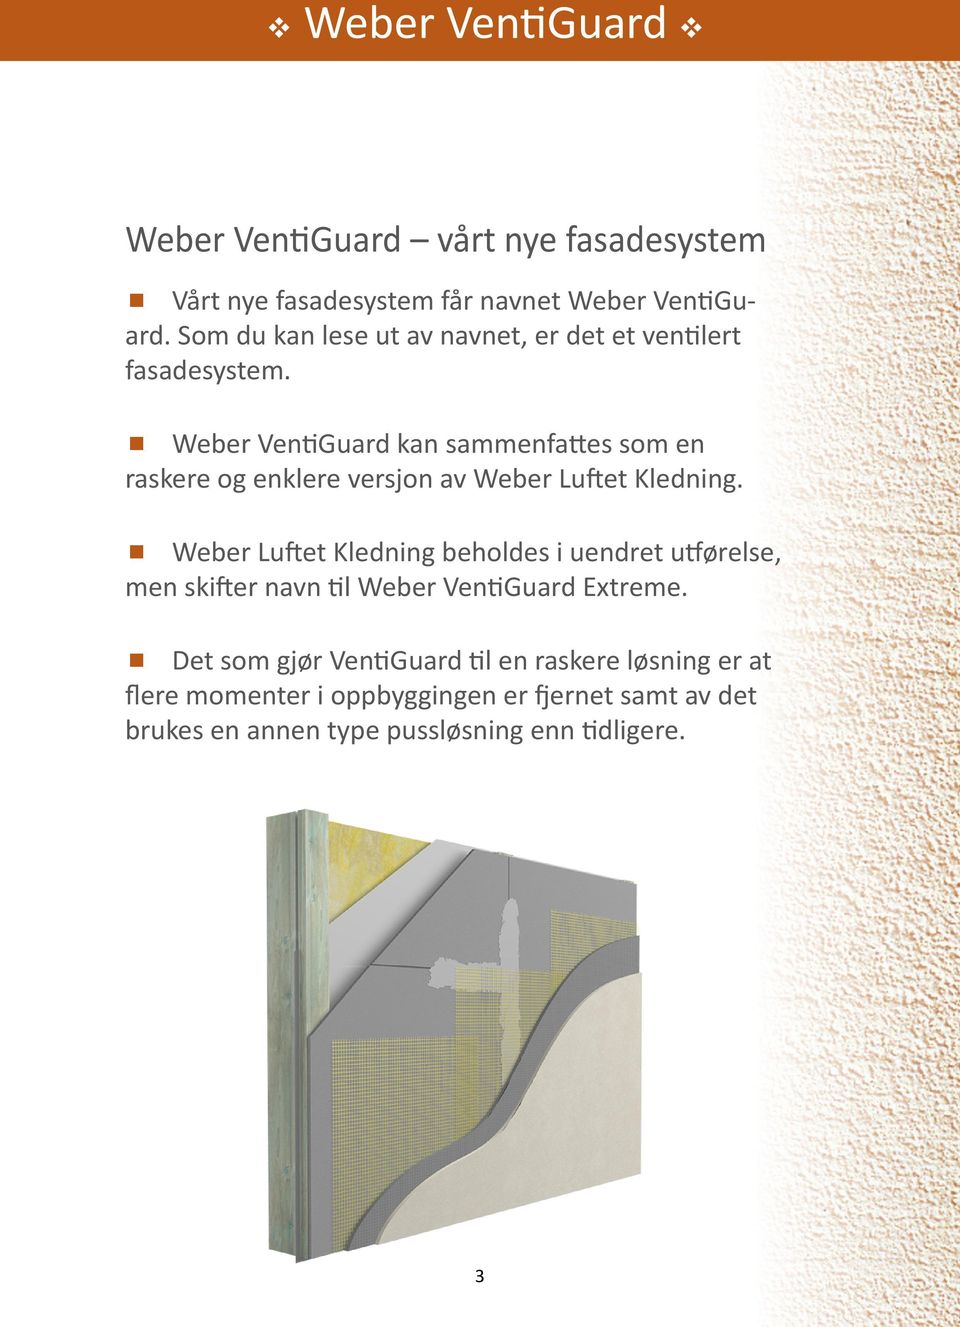 Weber VentiGuard kan sammenfattes som en raskere og enklere versjon av Weber Luftet Kledning.